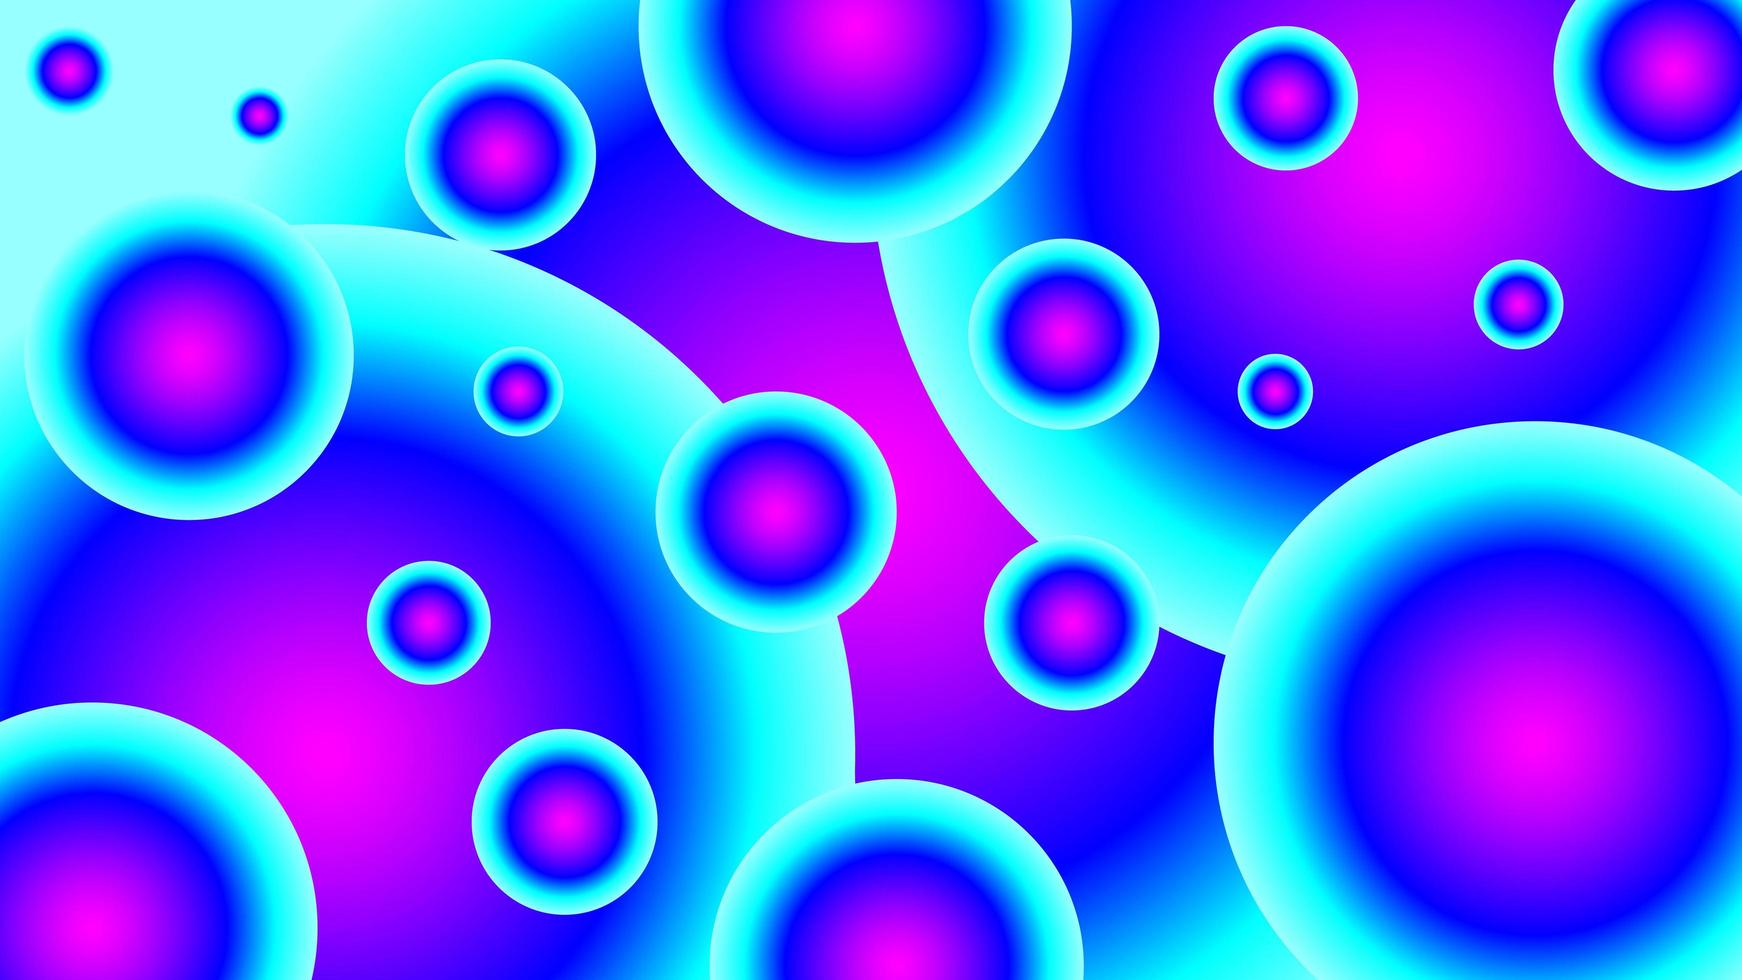 abstracte cirkelachtergrond met vloeibaar paars blauw vector